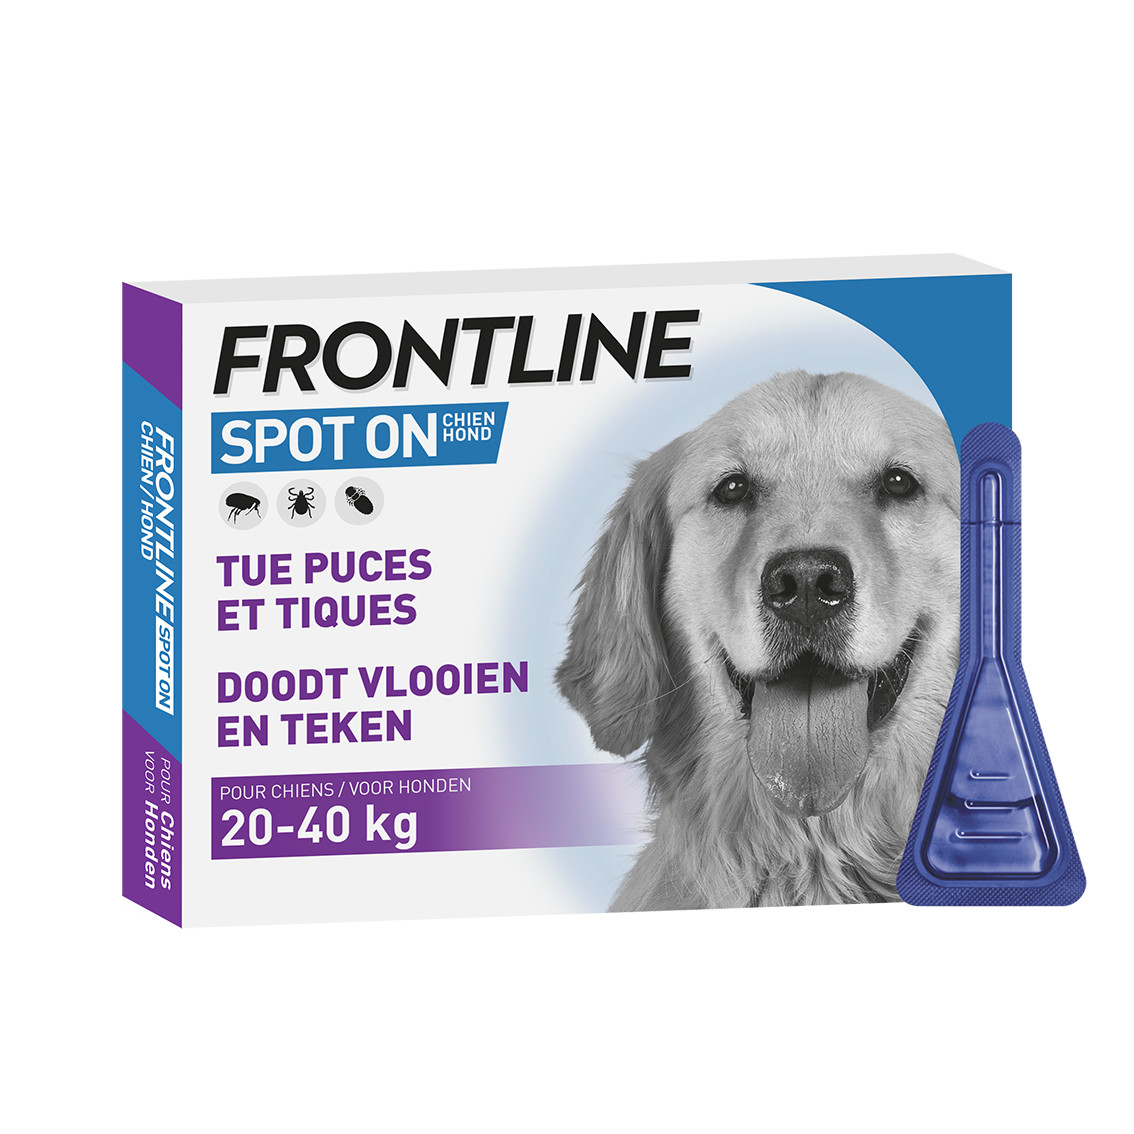 Frontline Spot On hond 20 - 40 kg / L